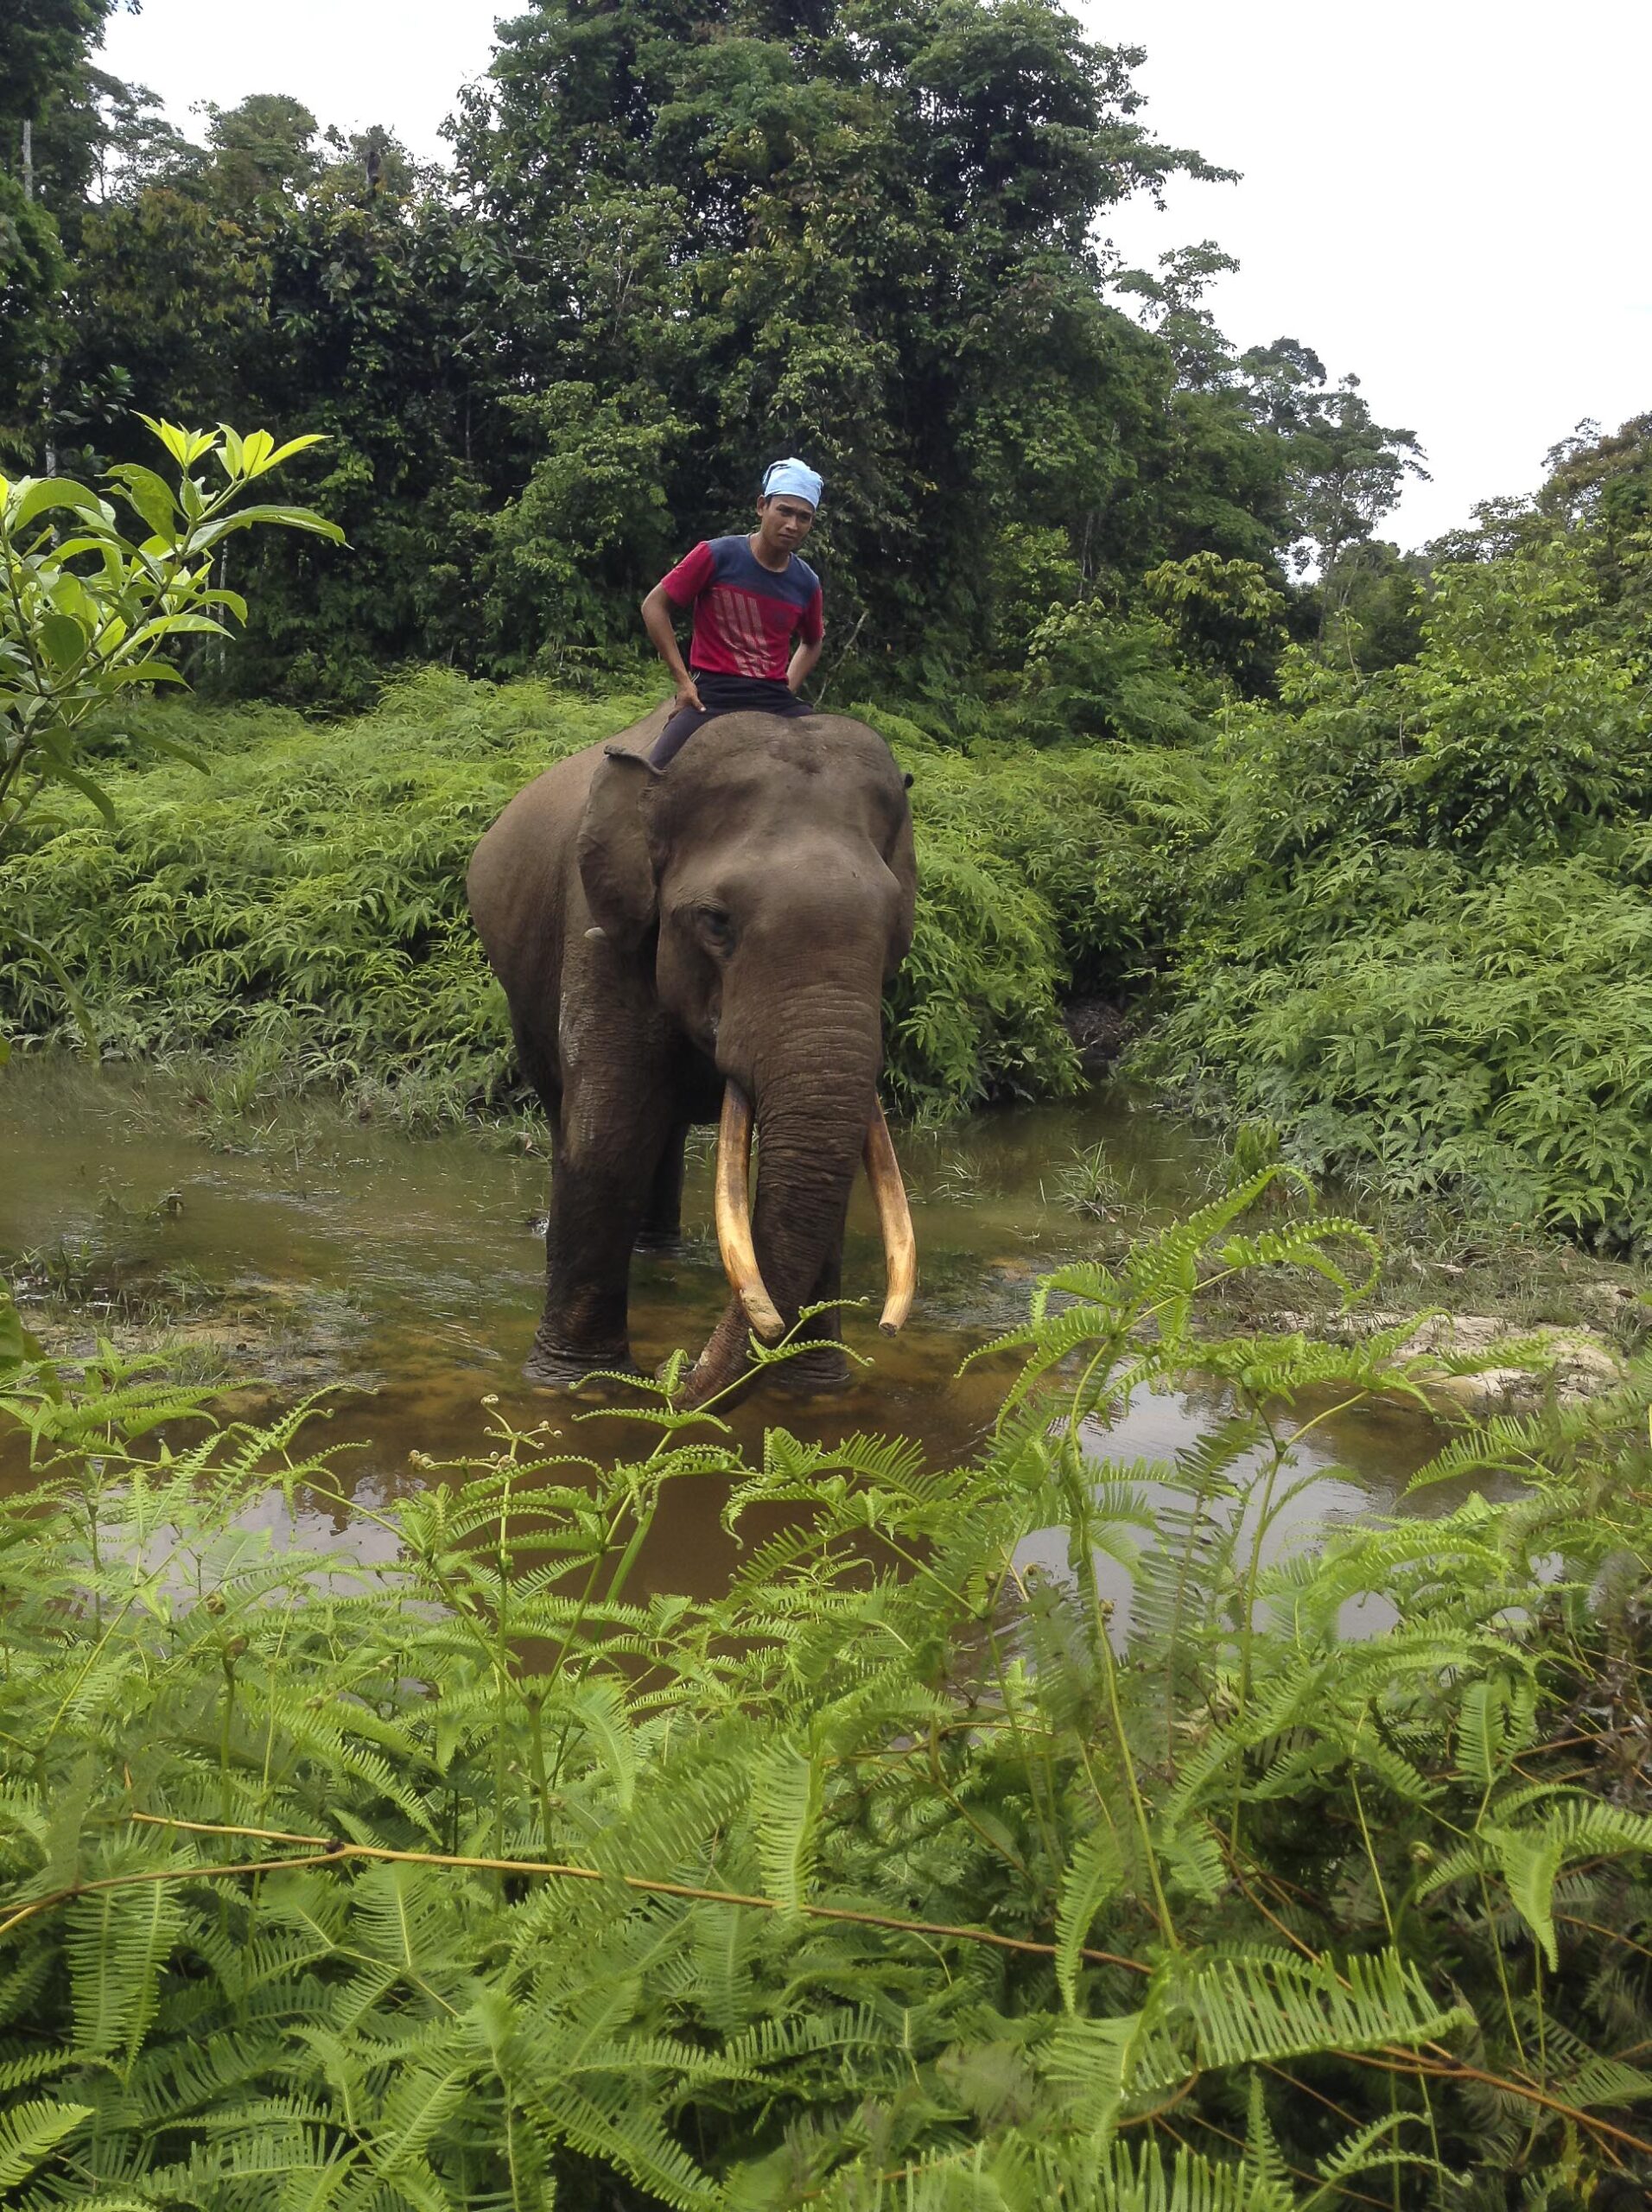 tesso nilo national park indonesia elephant conservation tour sanctuary sumatra 3 scaled